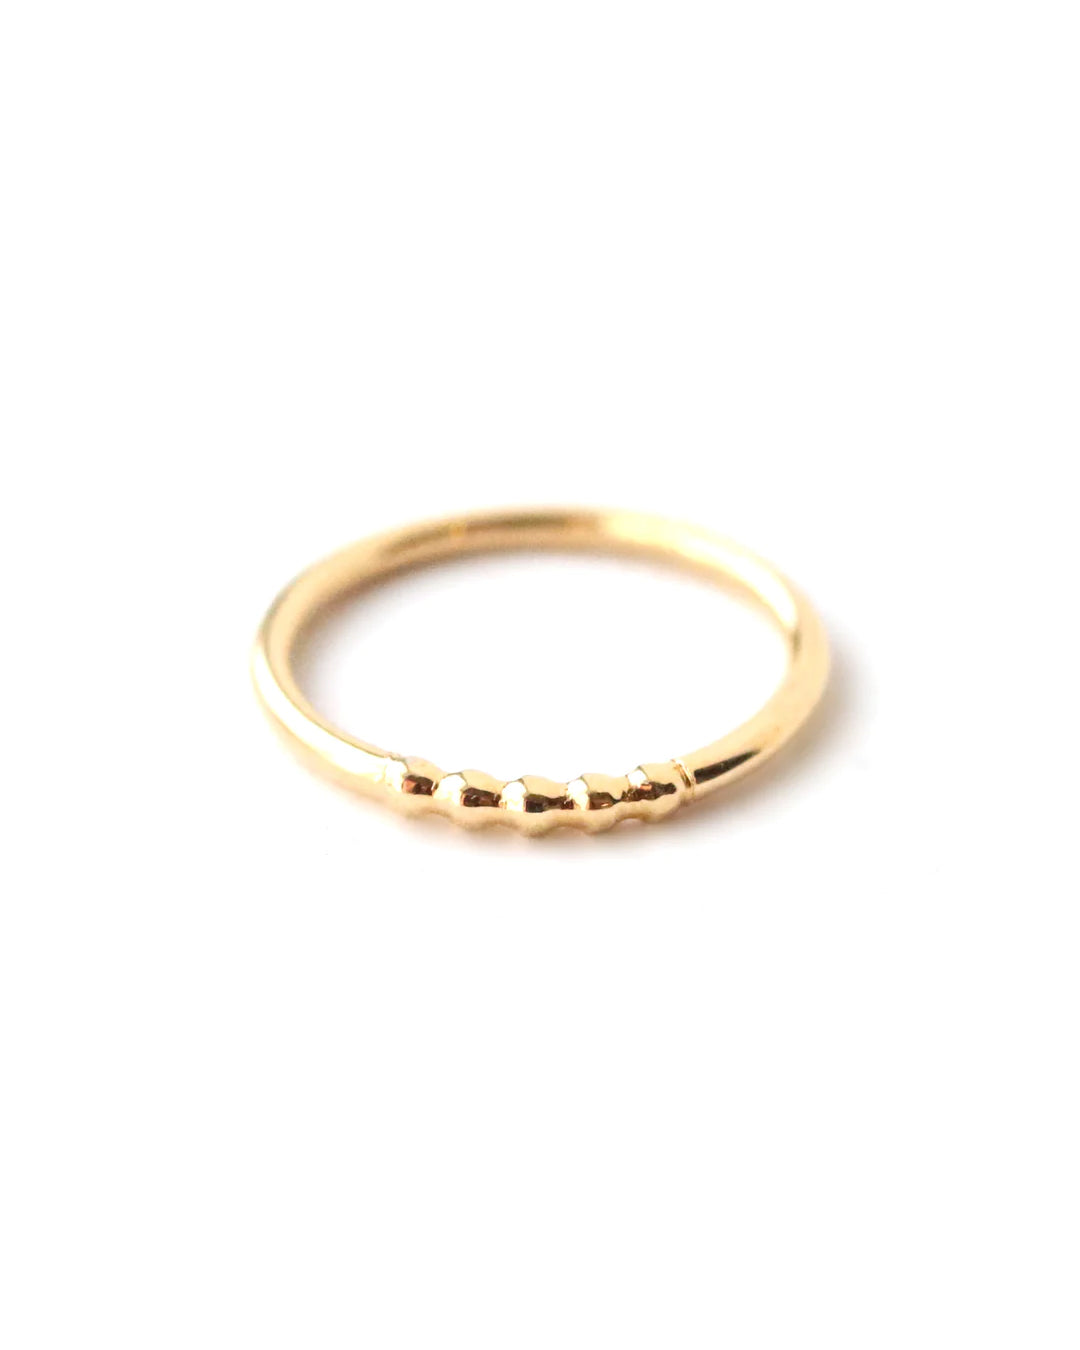 Sierra Gold Ring